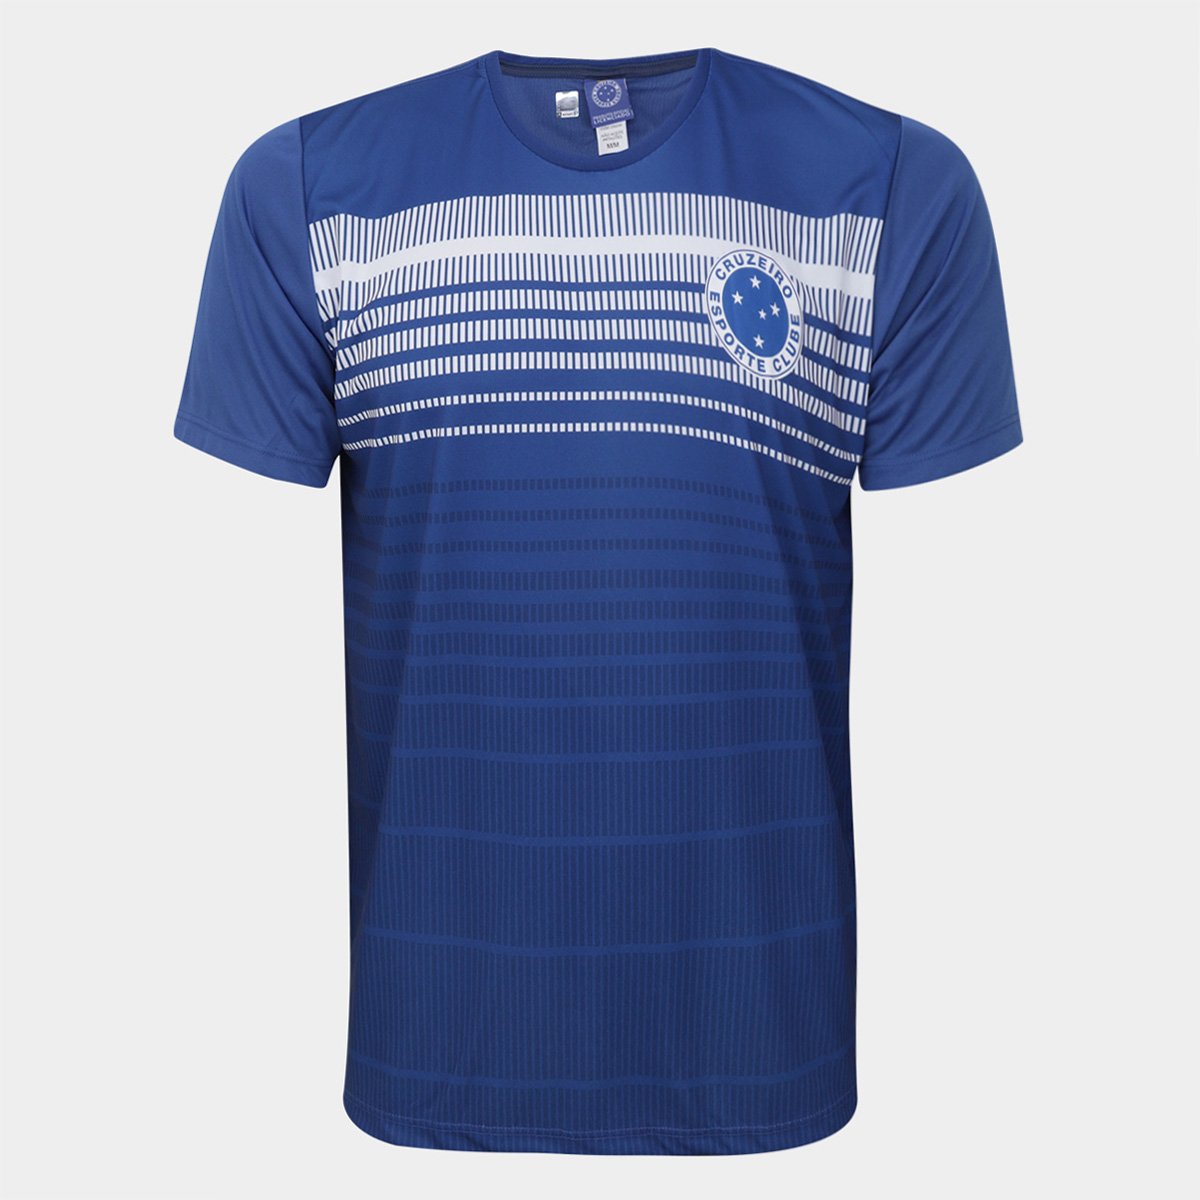 Saindo por R$ 64,99: Camisa Cruzeiro Braziline Counselor, Masculina - Personalizável | Pelando